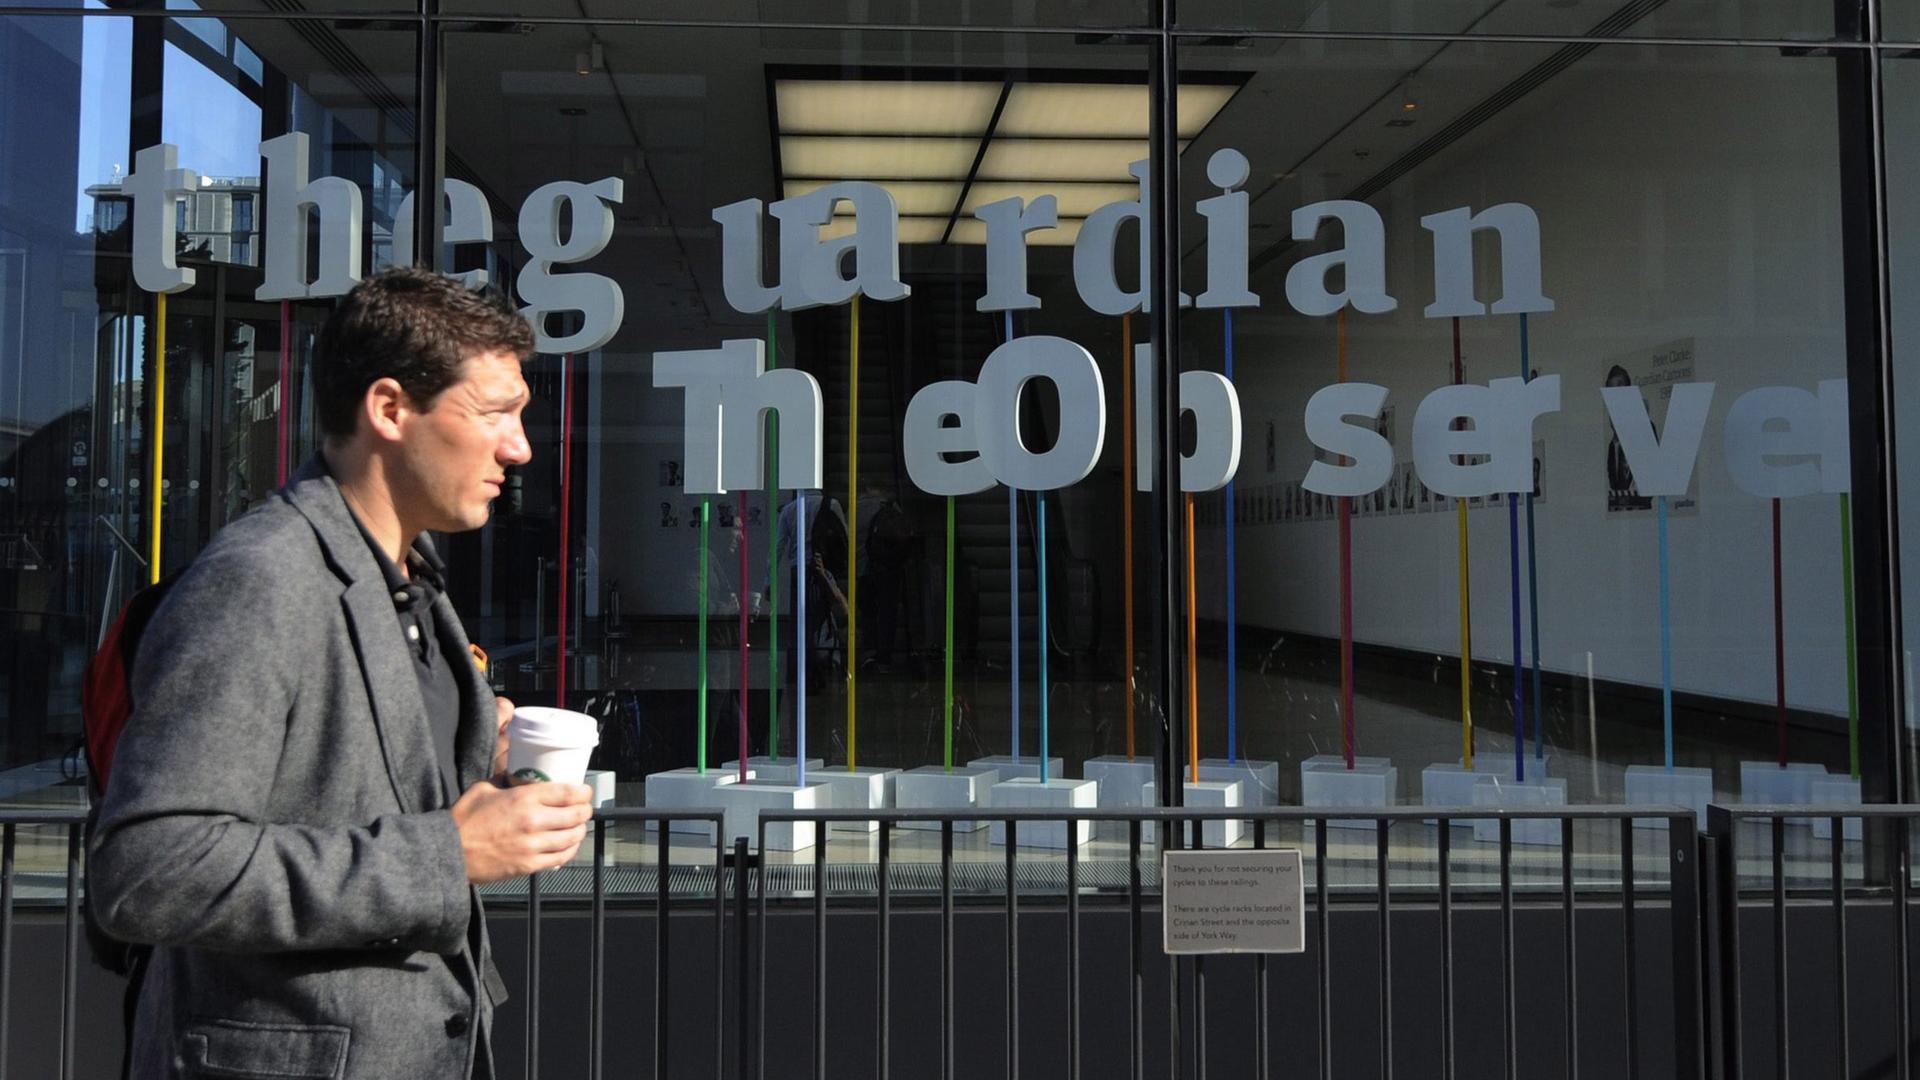 Vor dem Redaktionsgebäude der Tageszeitung "The Guardian" in London